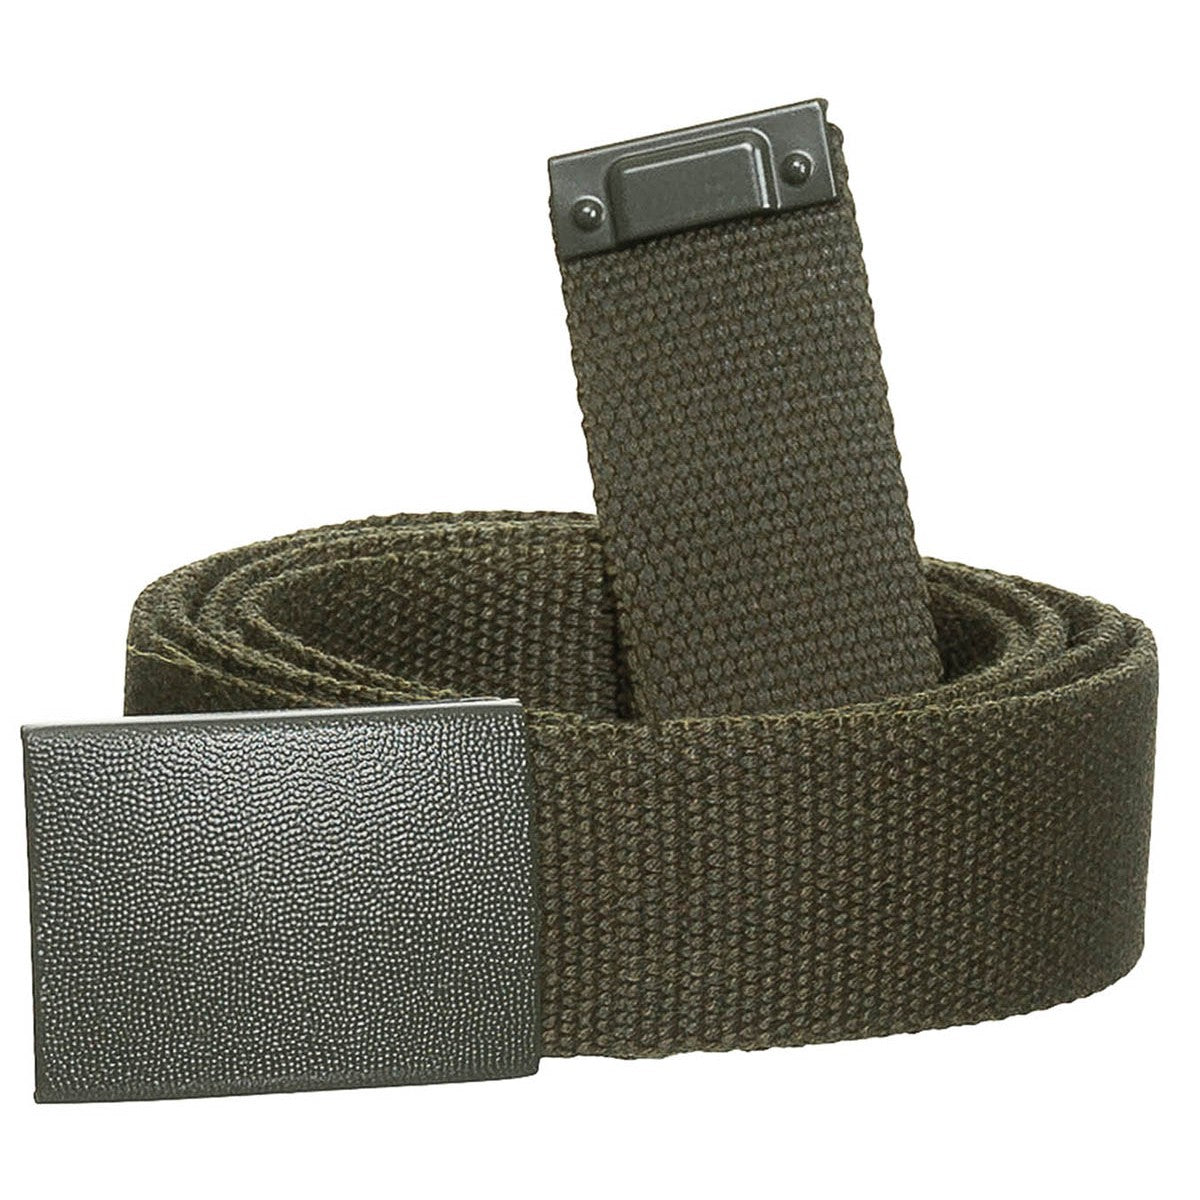 Cintura per pantaloni in bianco e nero, oliva, circa 3 cm, con chiusura a cassetta